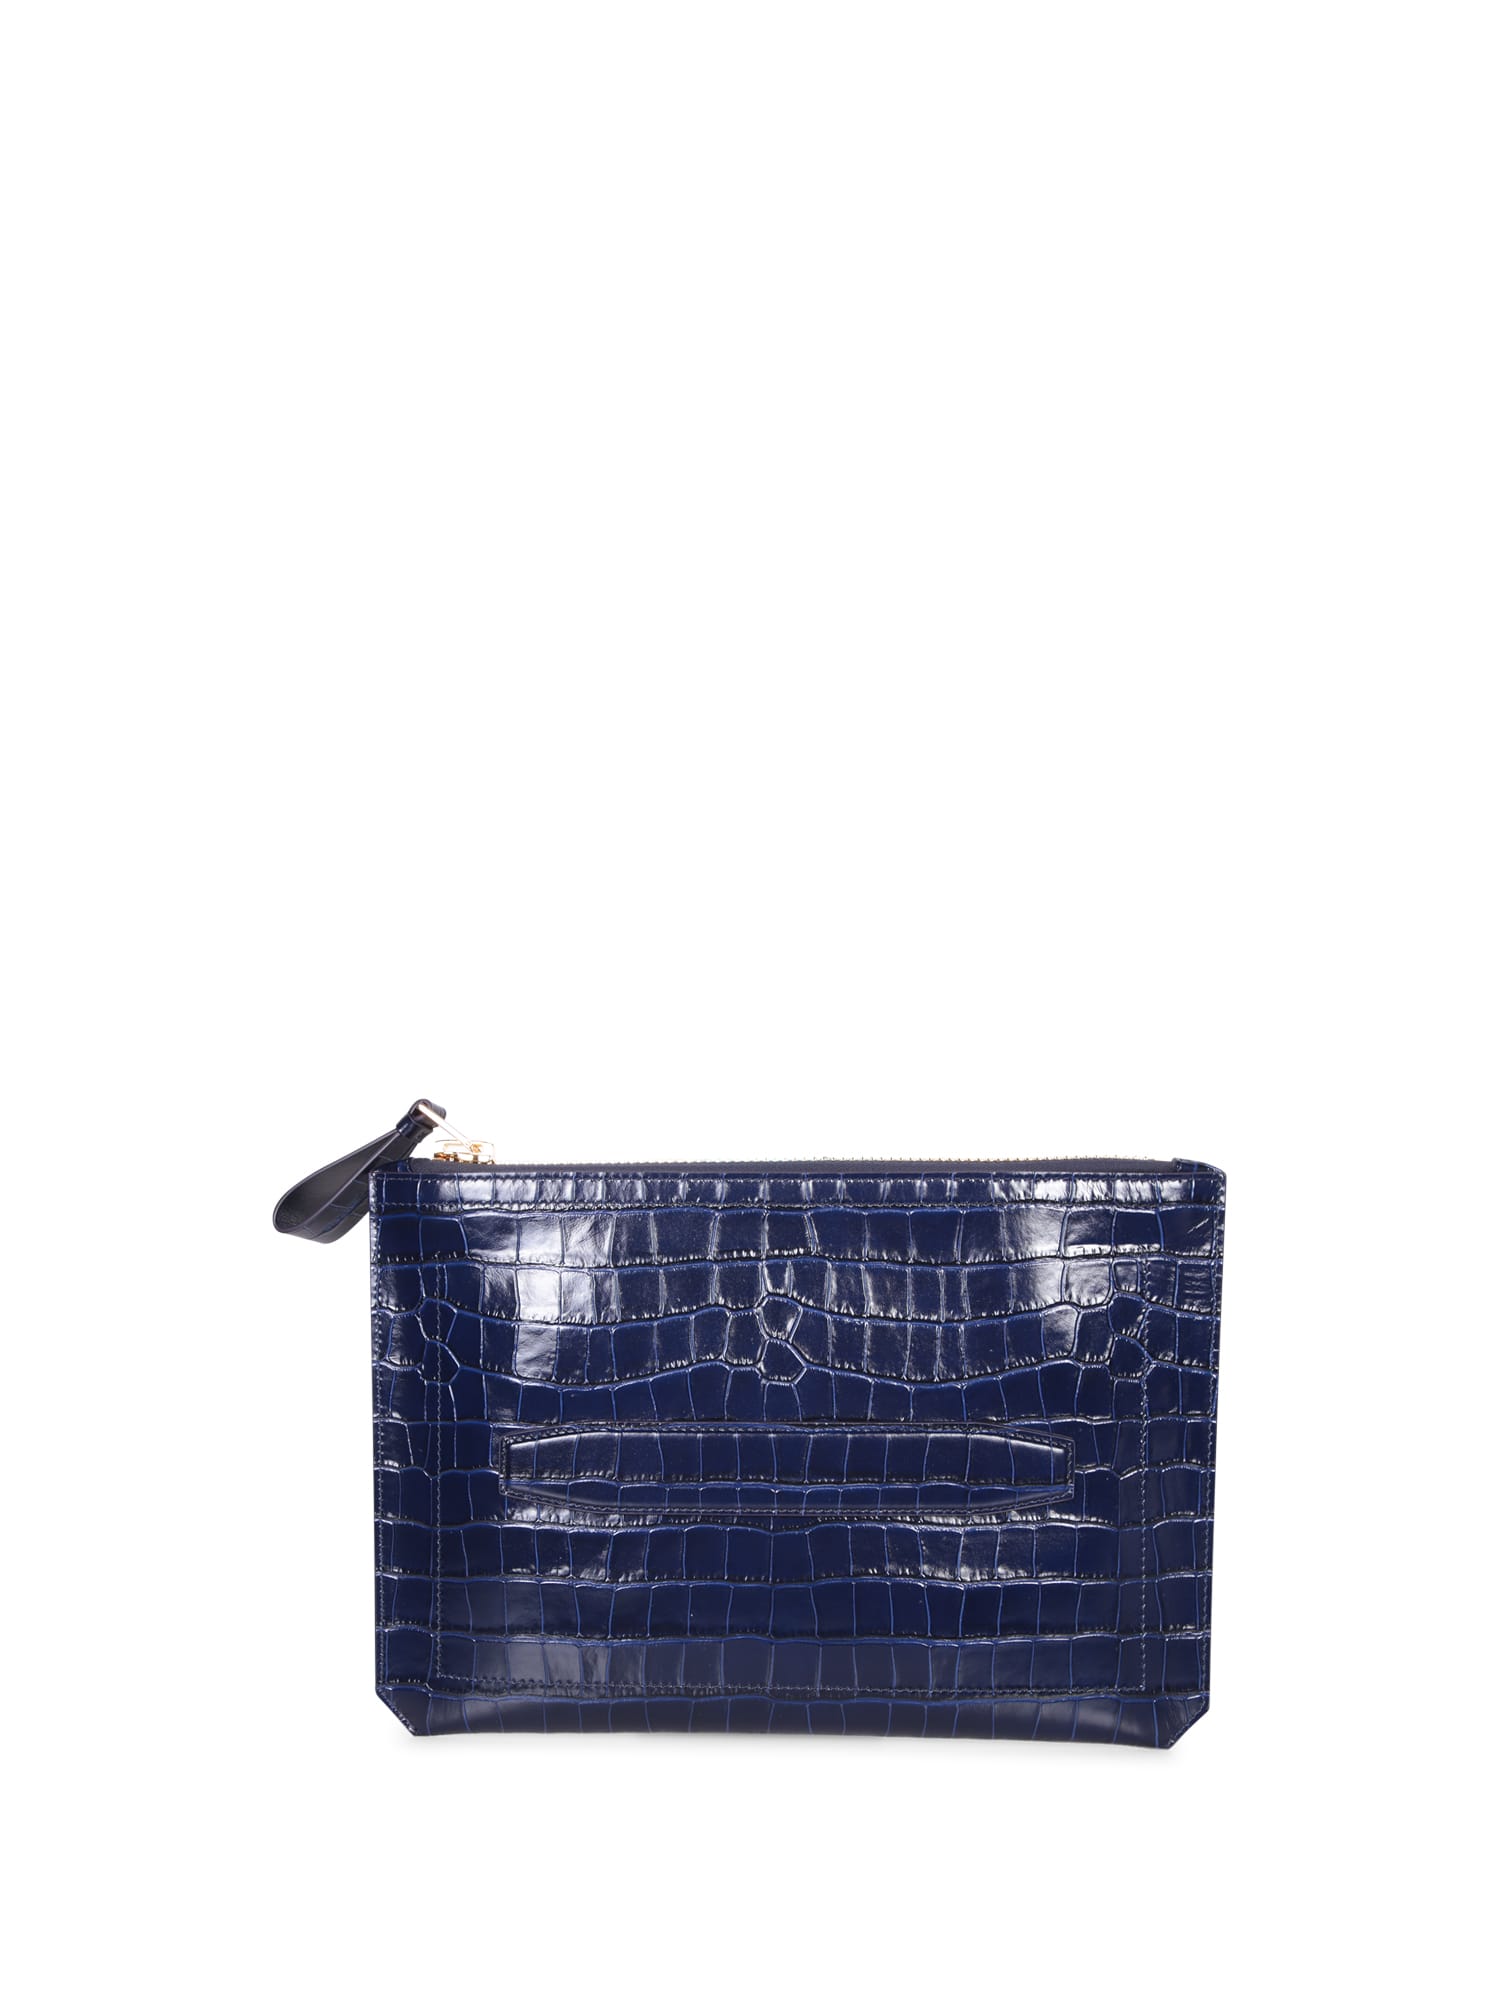 Buckley Small Croco Blue Handbag